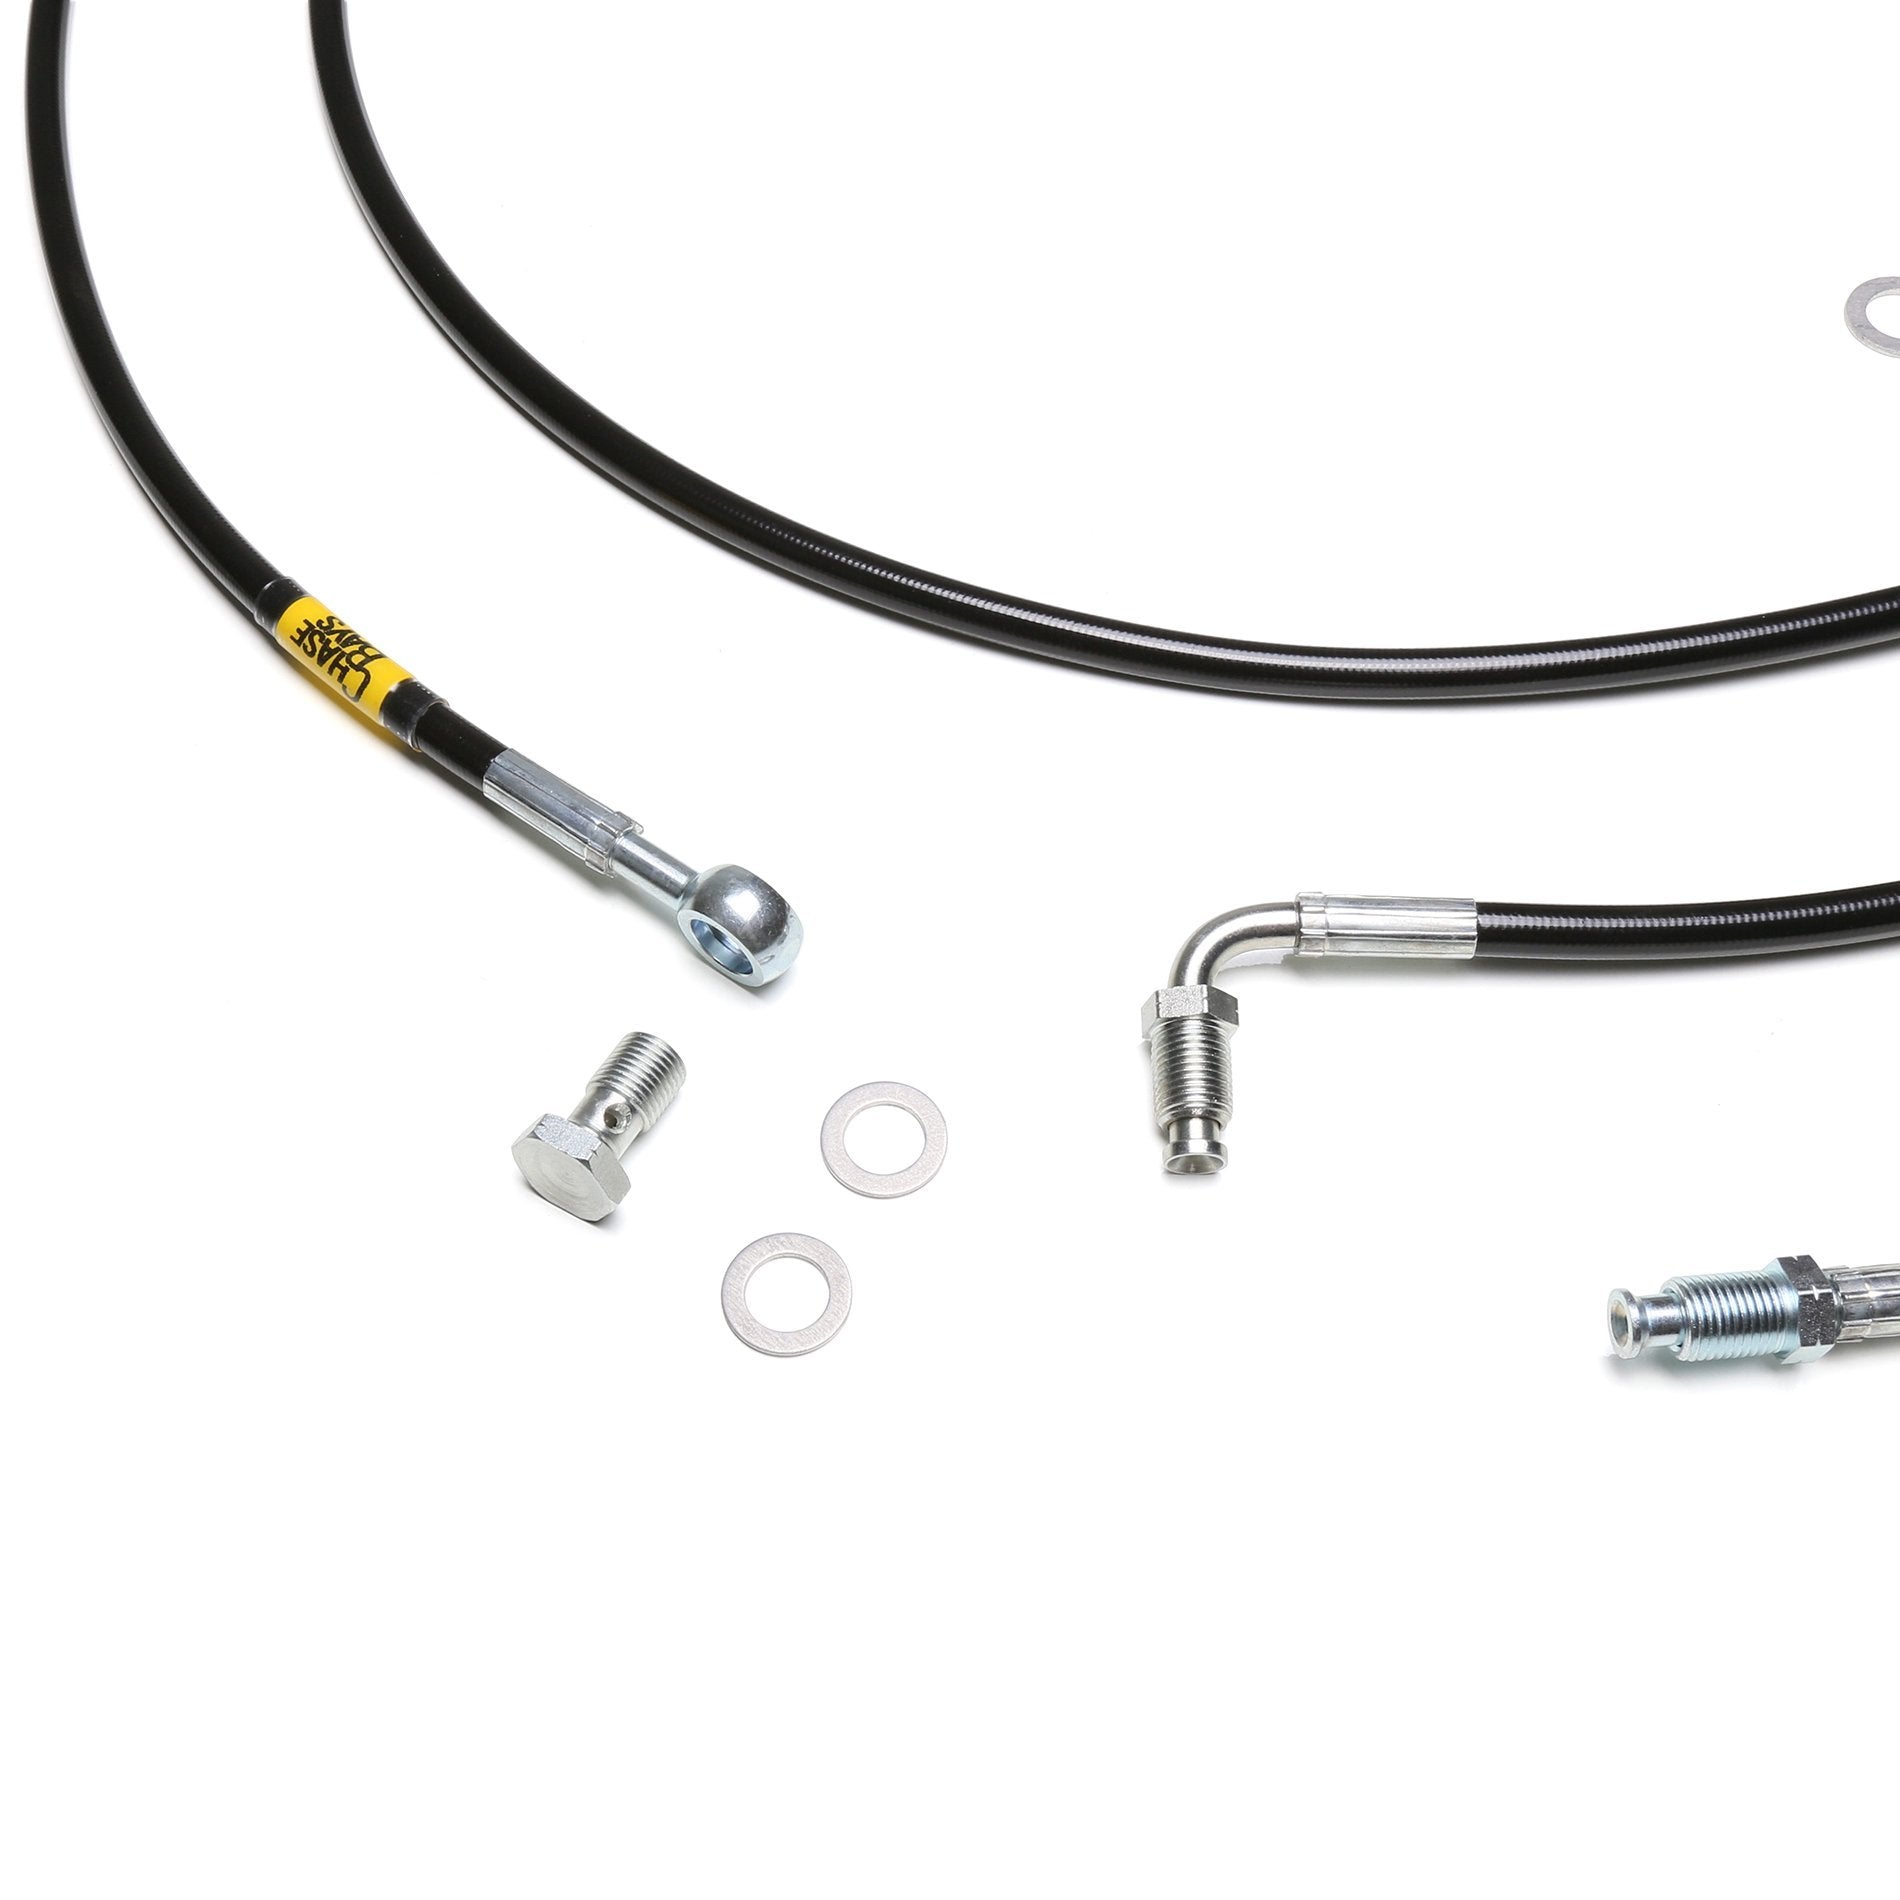 CHASE BAYS Nissan Silvia S13 S14 S15 Bremsleitung Relocation Kit für OEM Bremszylinder inBay - PARTS33 GmbH